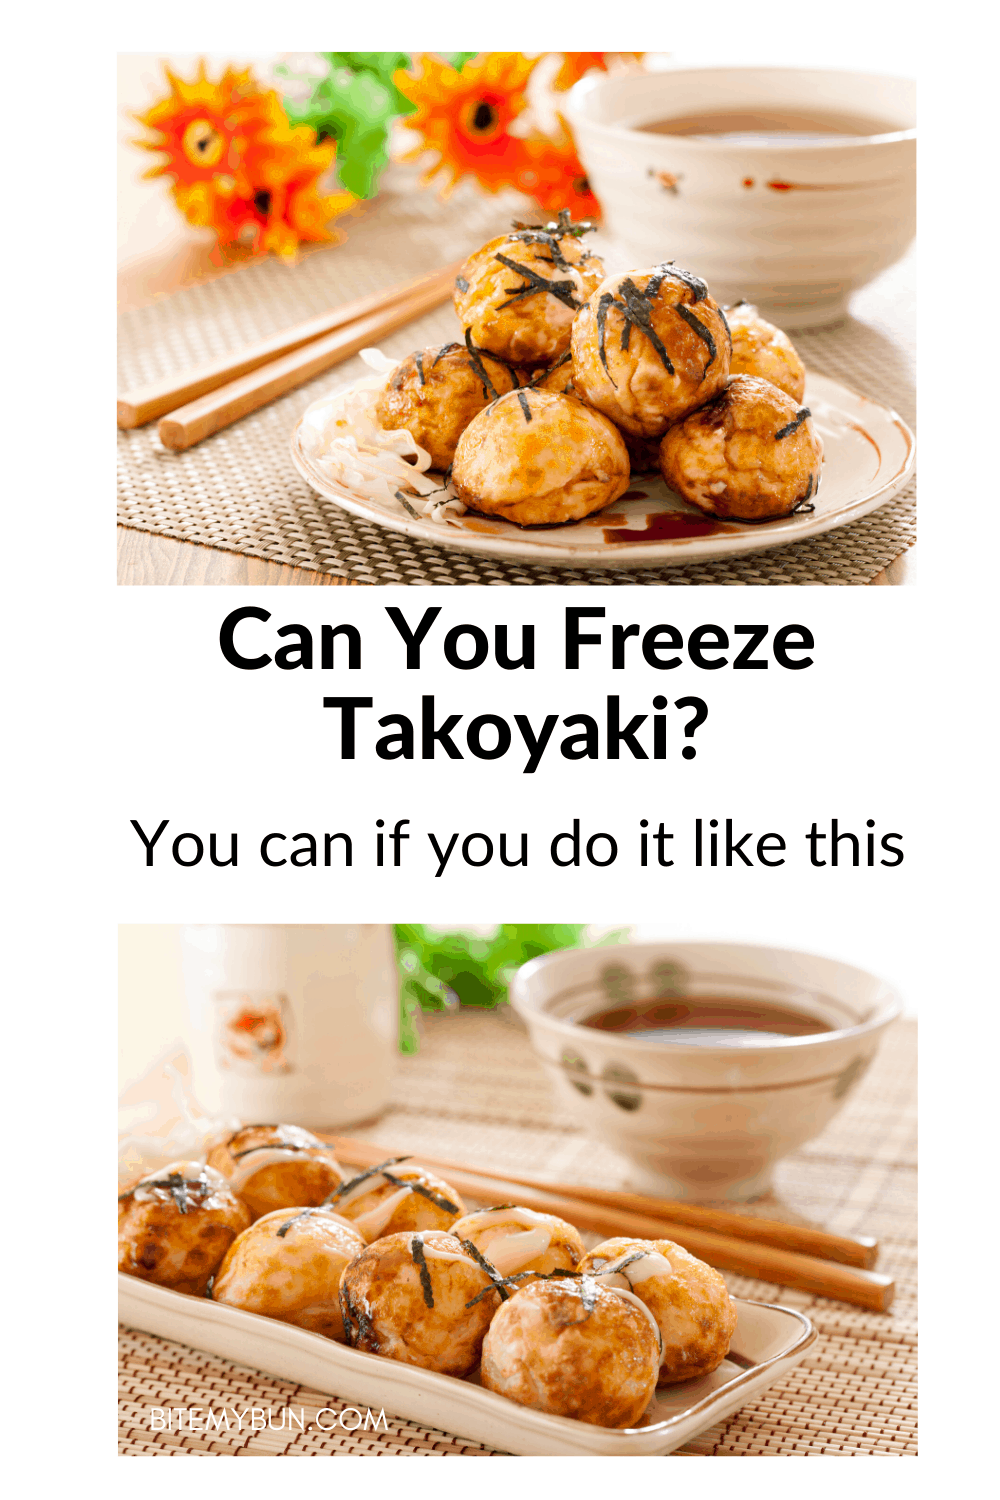 O ka emisa takoyaki